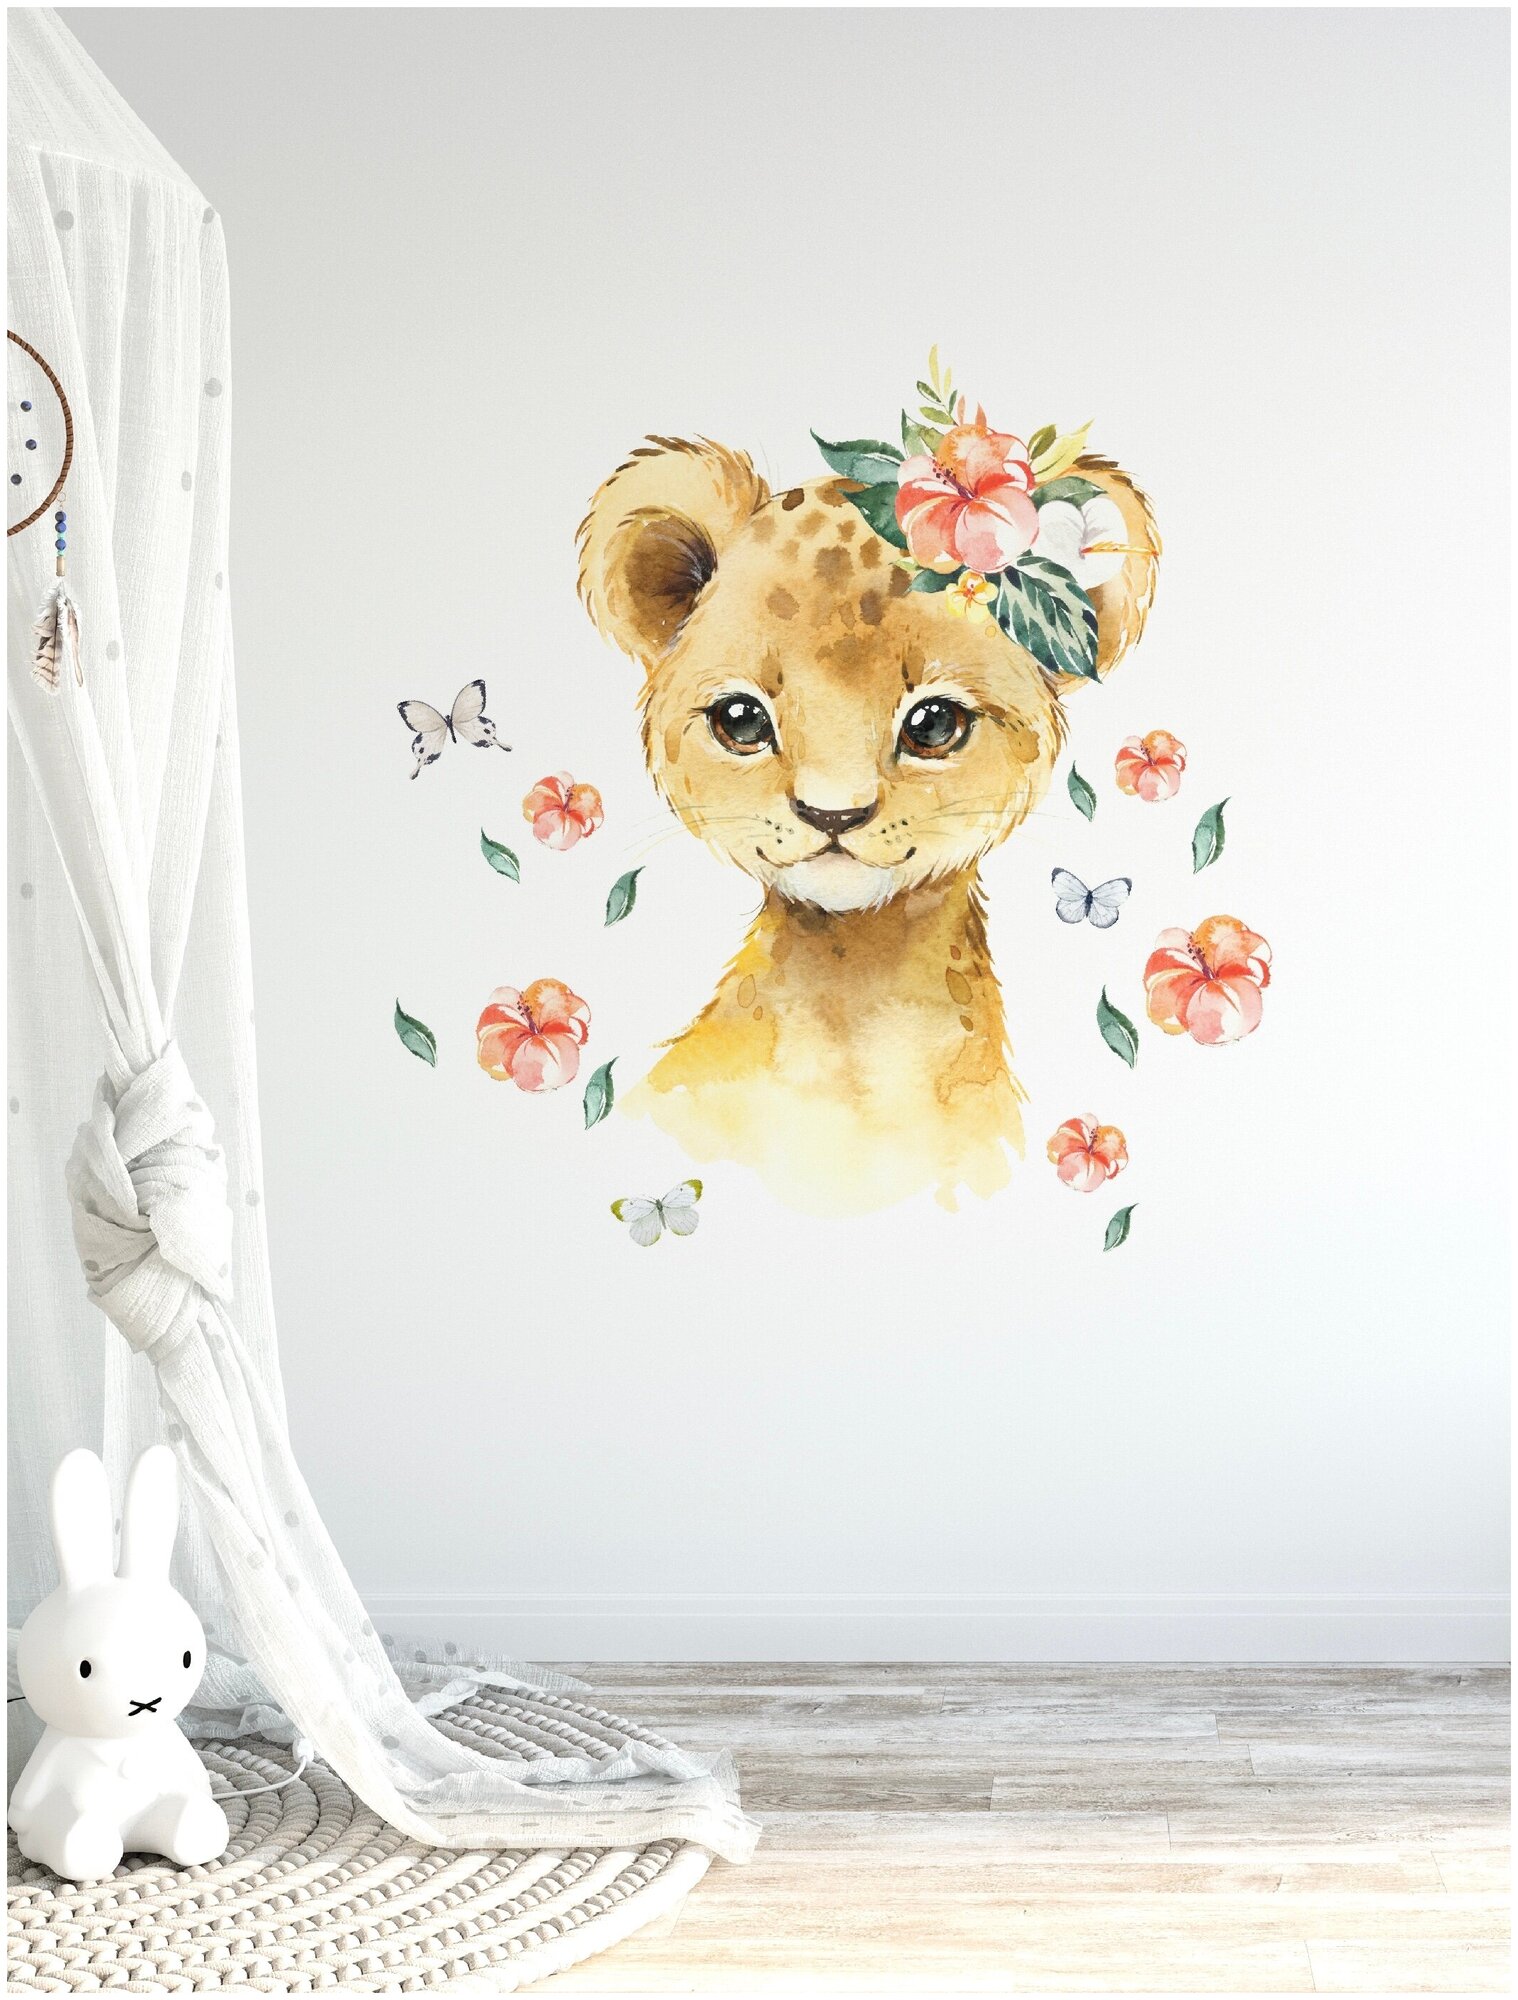 Интерьерные декоративные виниловые наклейки на стену детские большие для девочки "Лев, Львята", украшение и декор детской комнаты